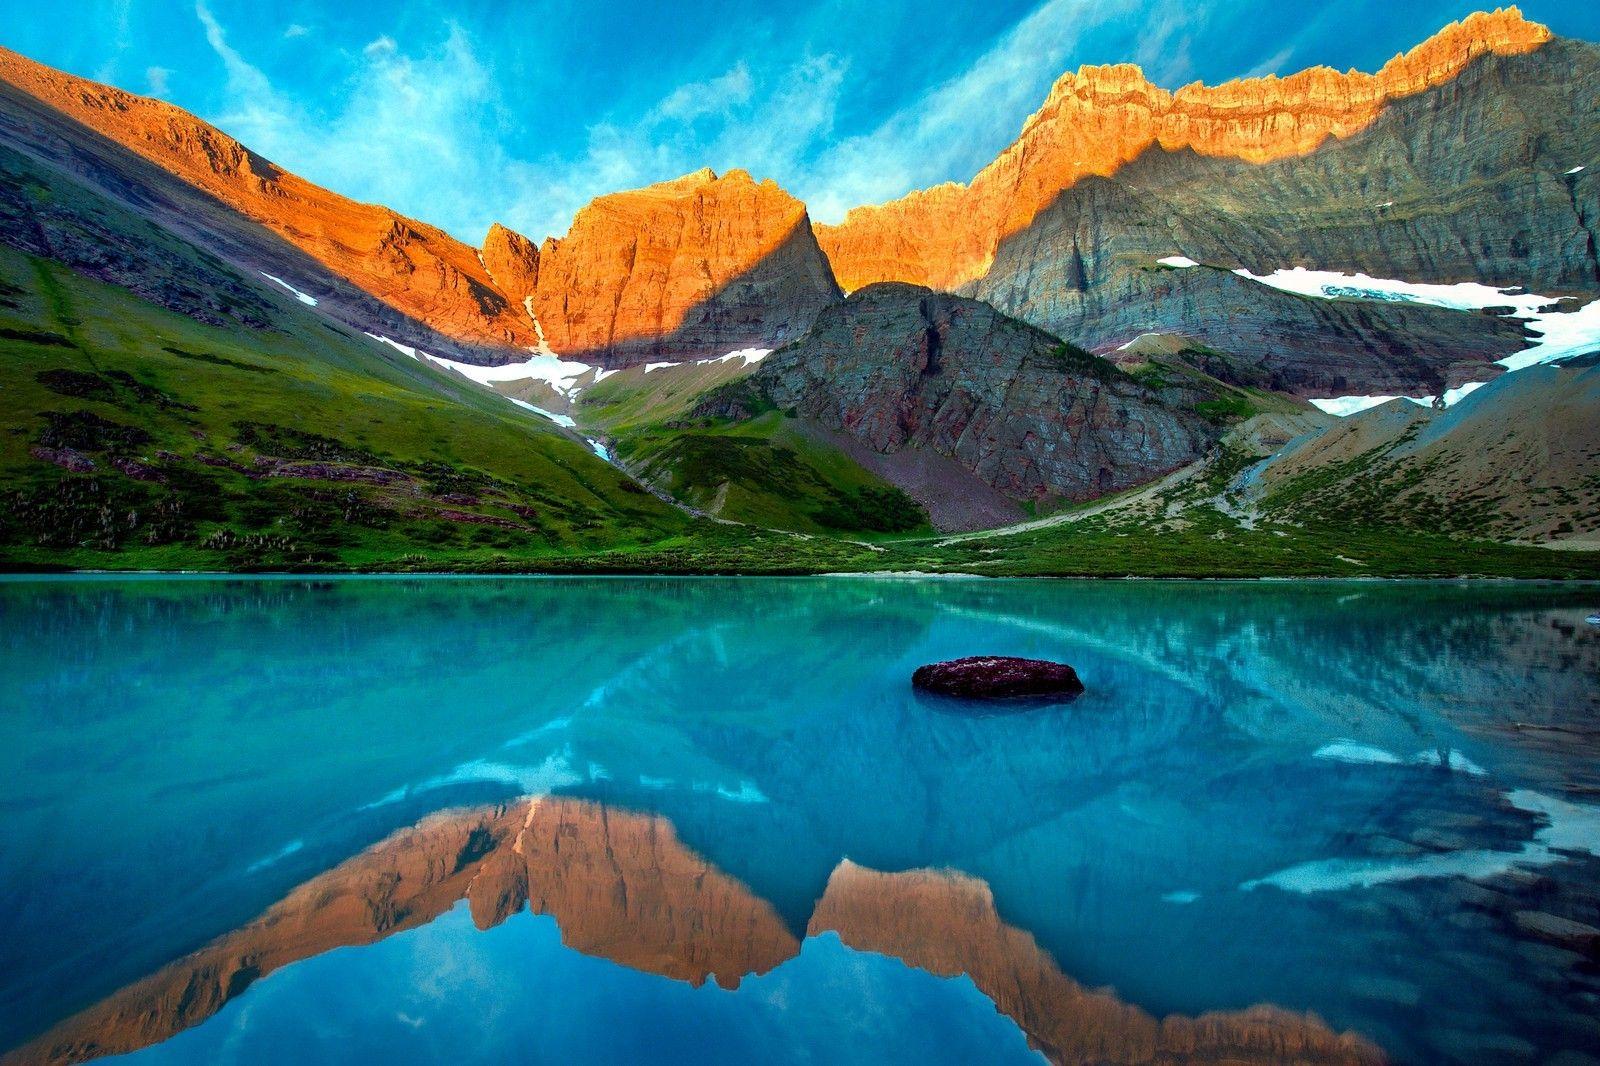 Download HD nature, Landscape, Glacier National Park, Montana. Desktop background image, Landscape, Sunset painting